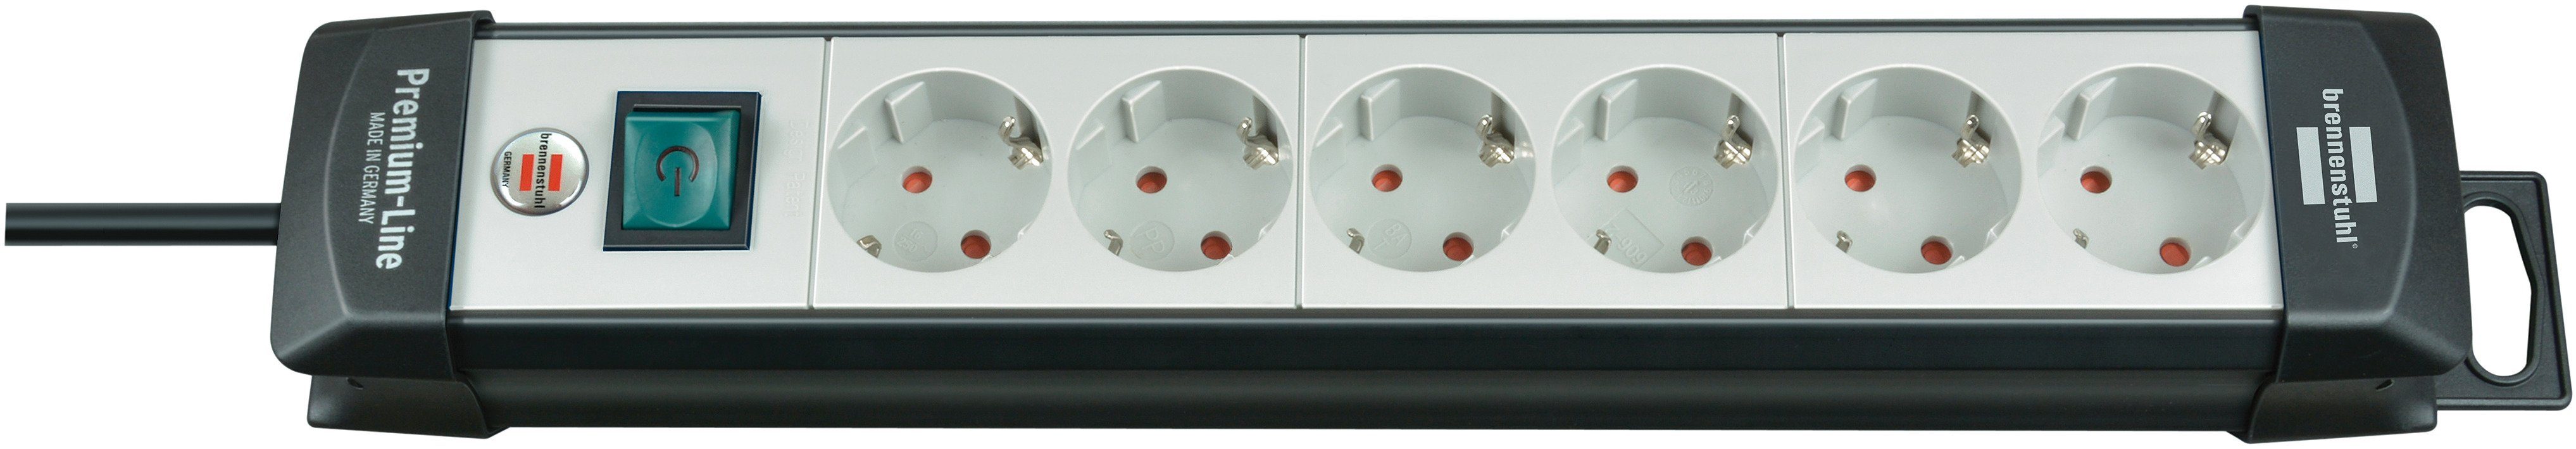 Brennenstuhl Premium-Line Steckdosenleiste 6-fach (Kabellänge 3 m), mit Schalter und 45° Anordnung der Steckdosen